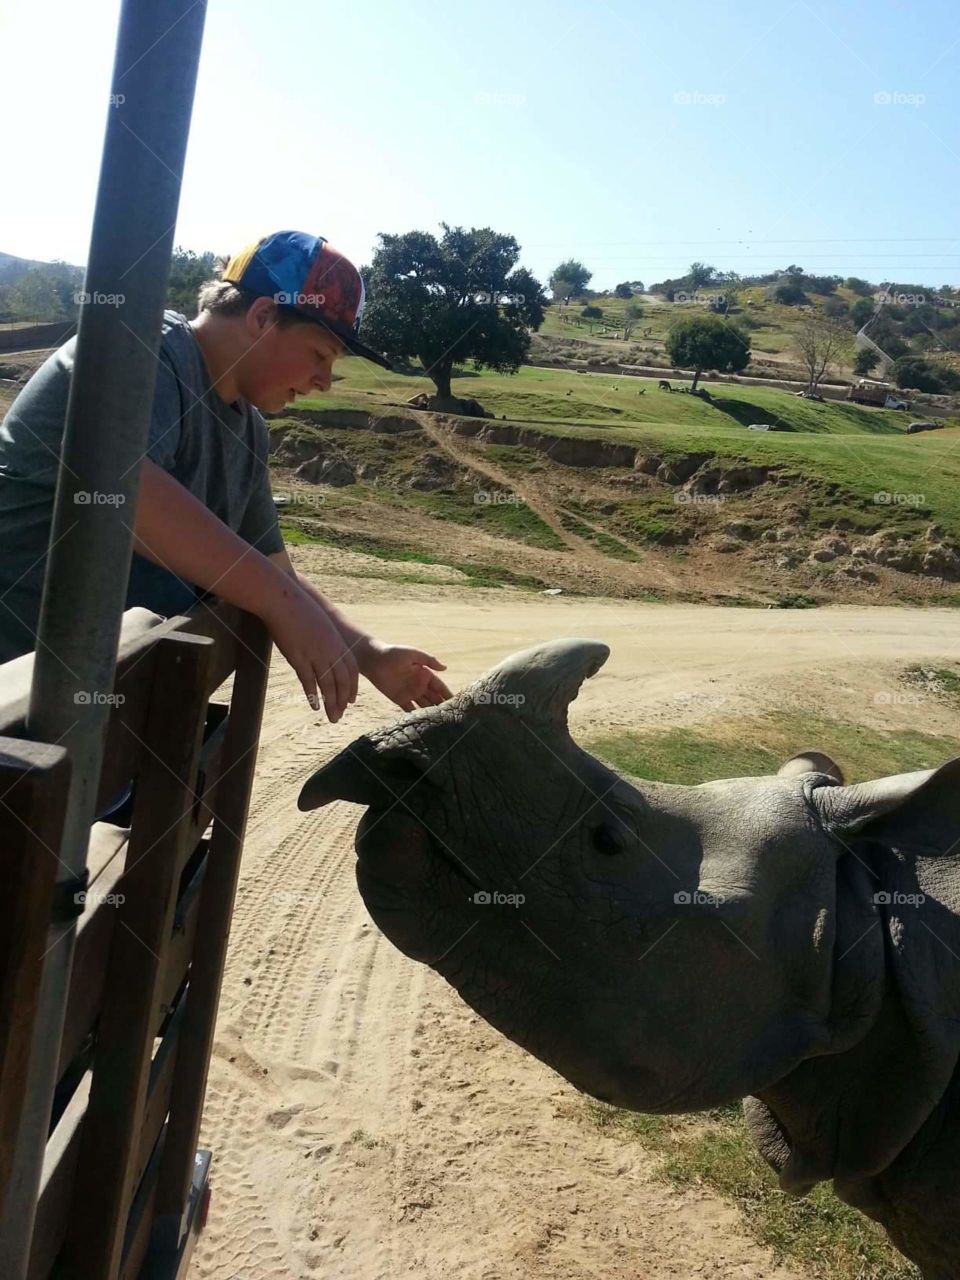 Shane and the rhino family vacation